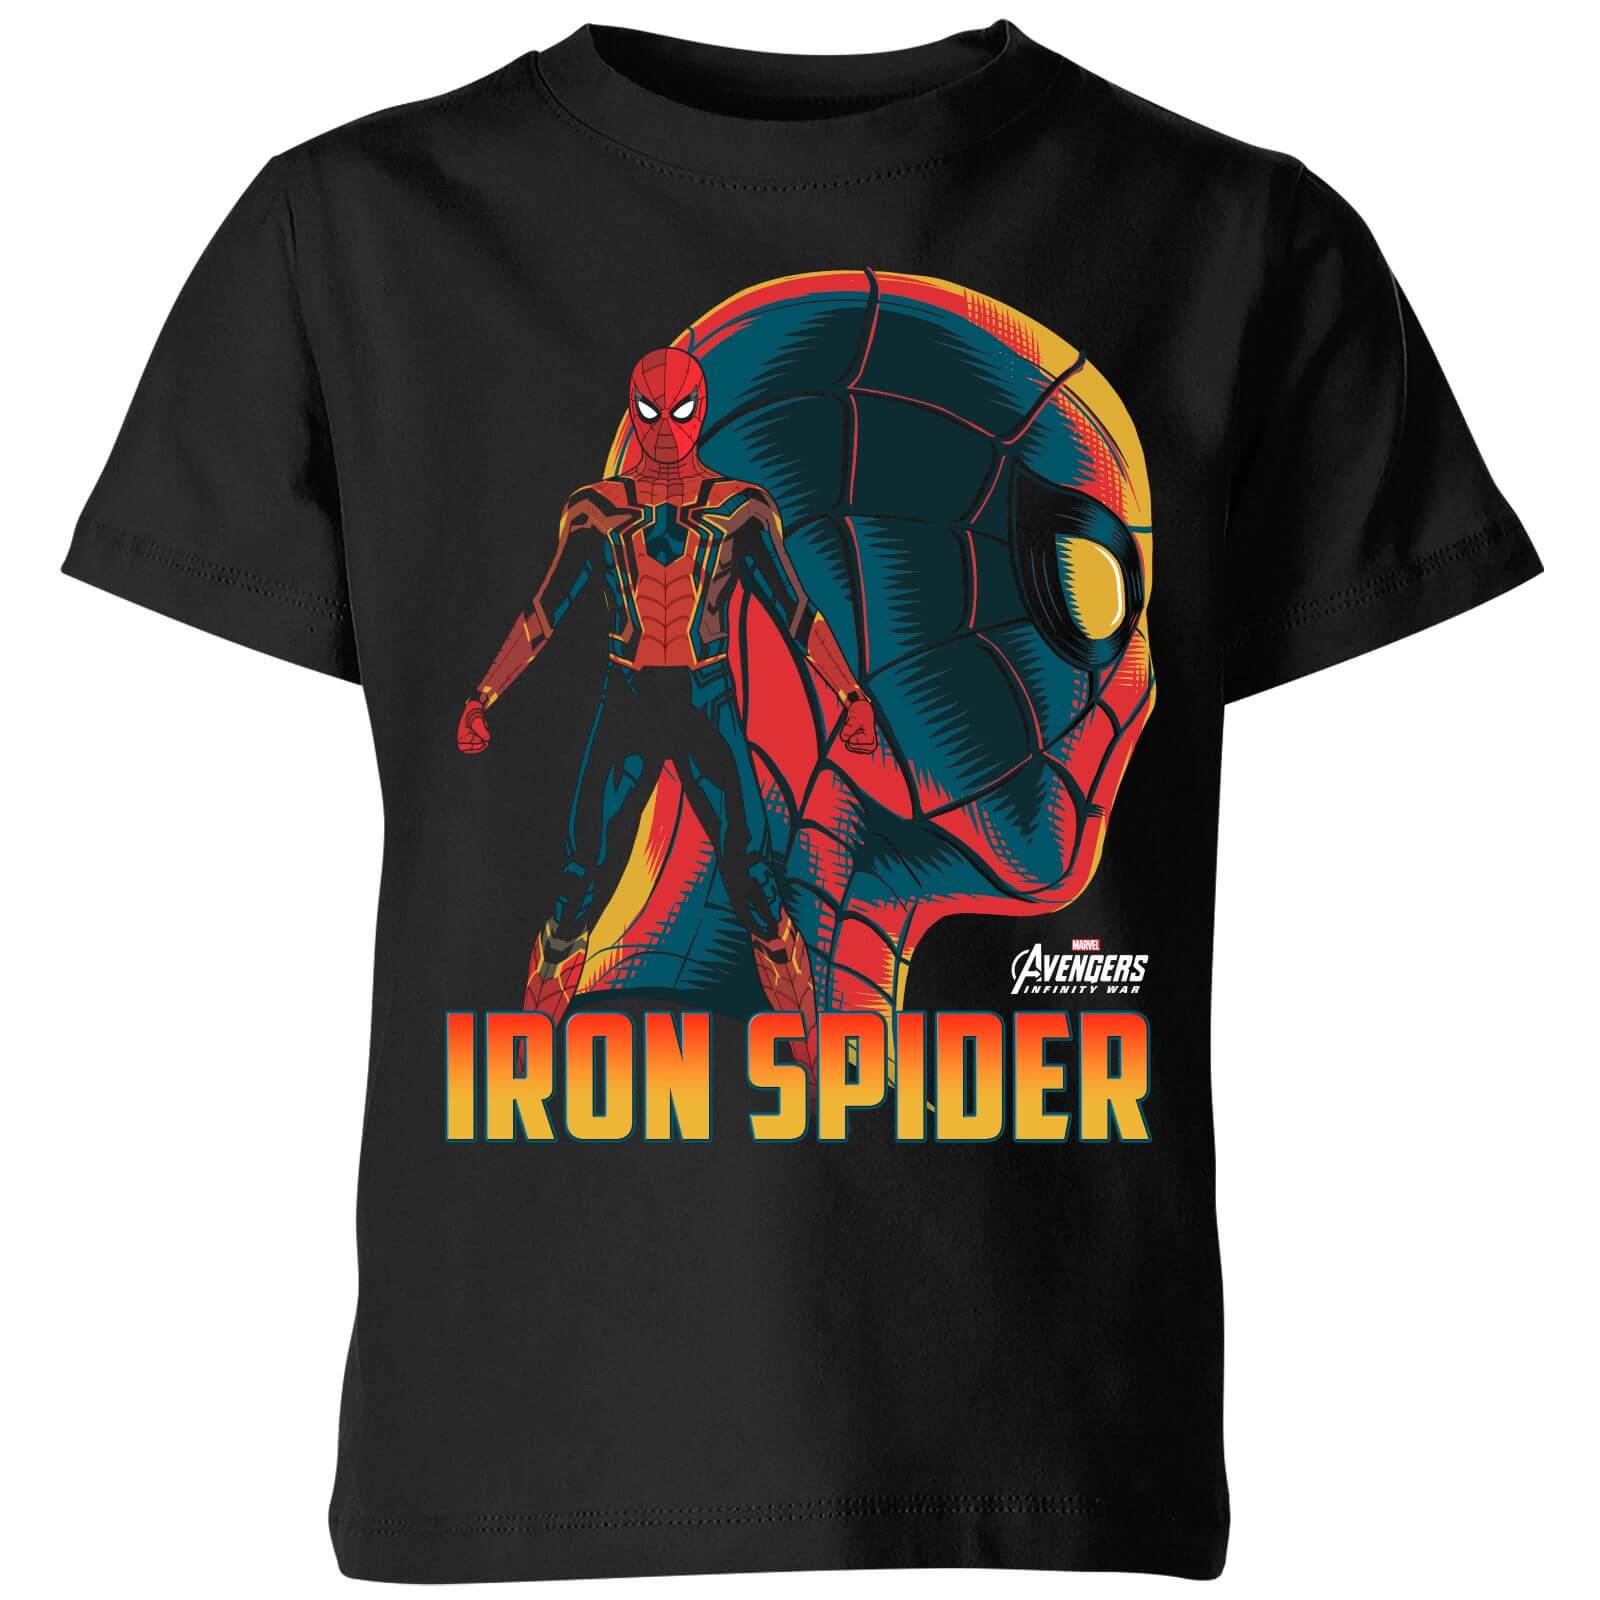 Marvel Avengers Iron Spider Kids' T-Shirt - Black - 7-8 Years - Black